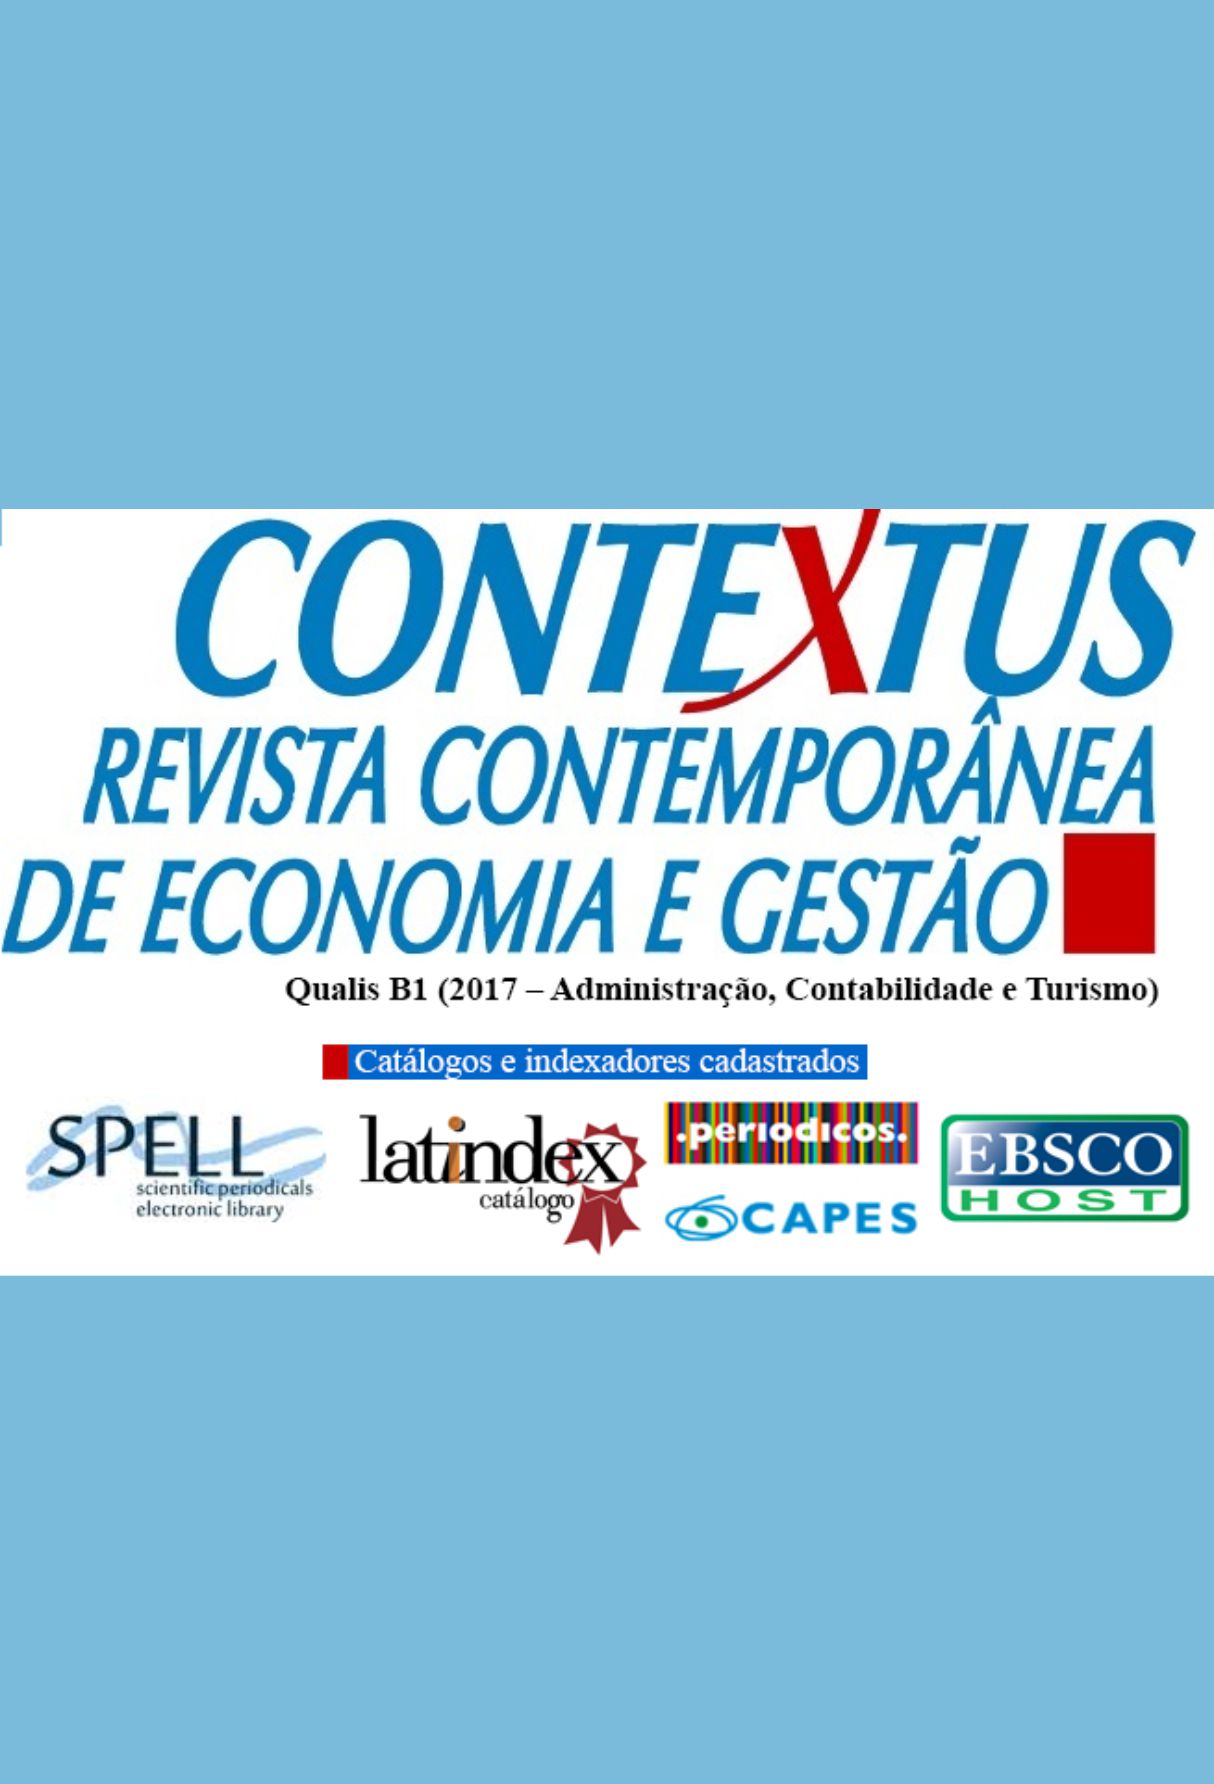 Capa: Contextus – Revista Contemporânea de Economia e Gestão